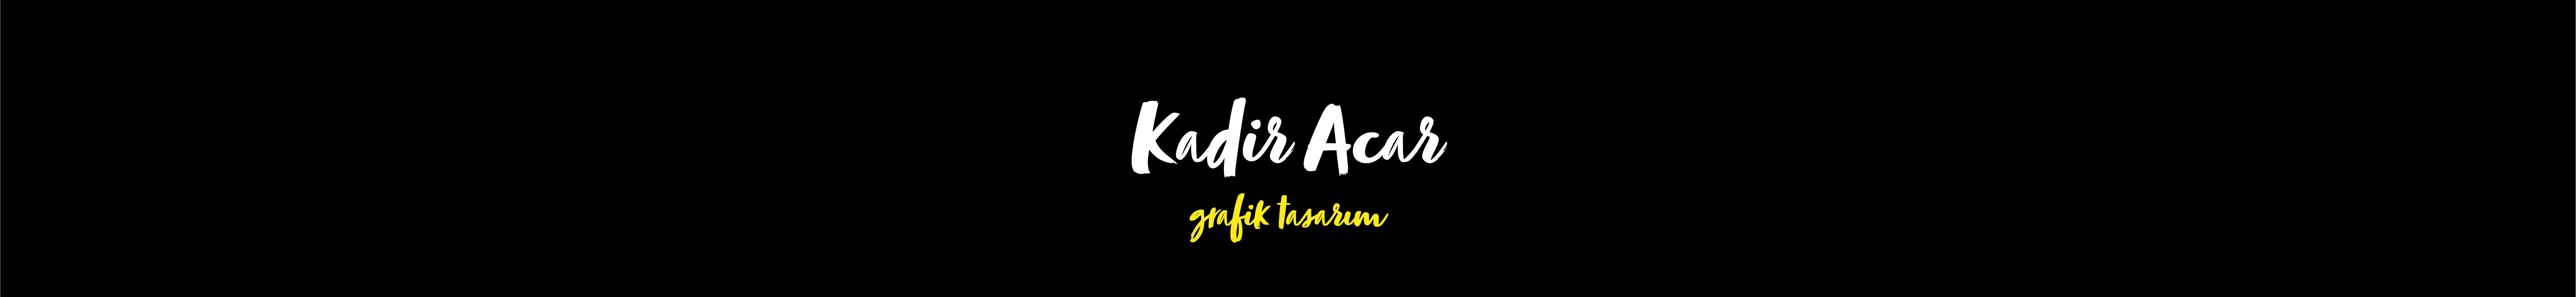 Баннер профиля Kadir Acar